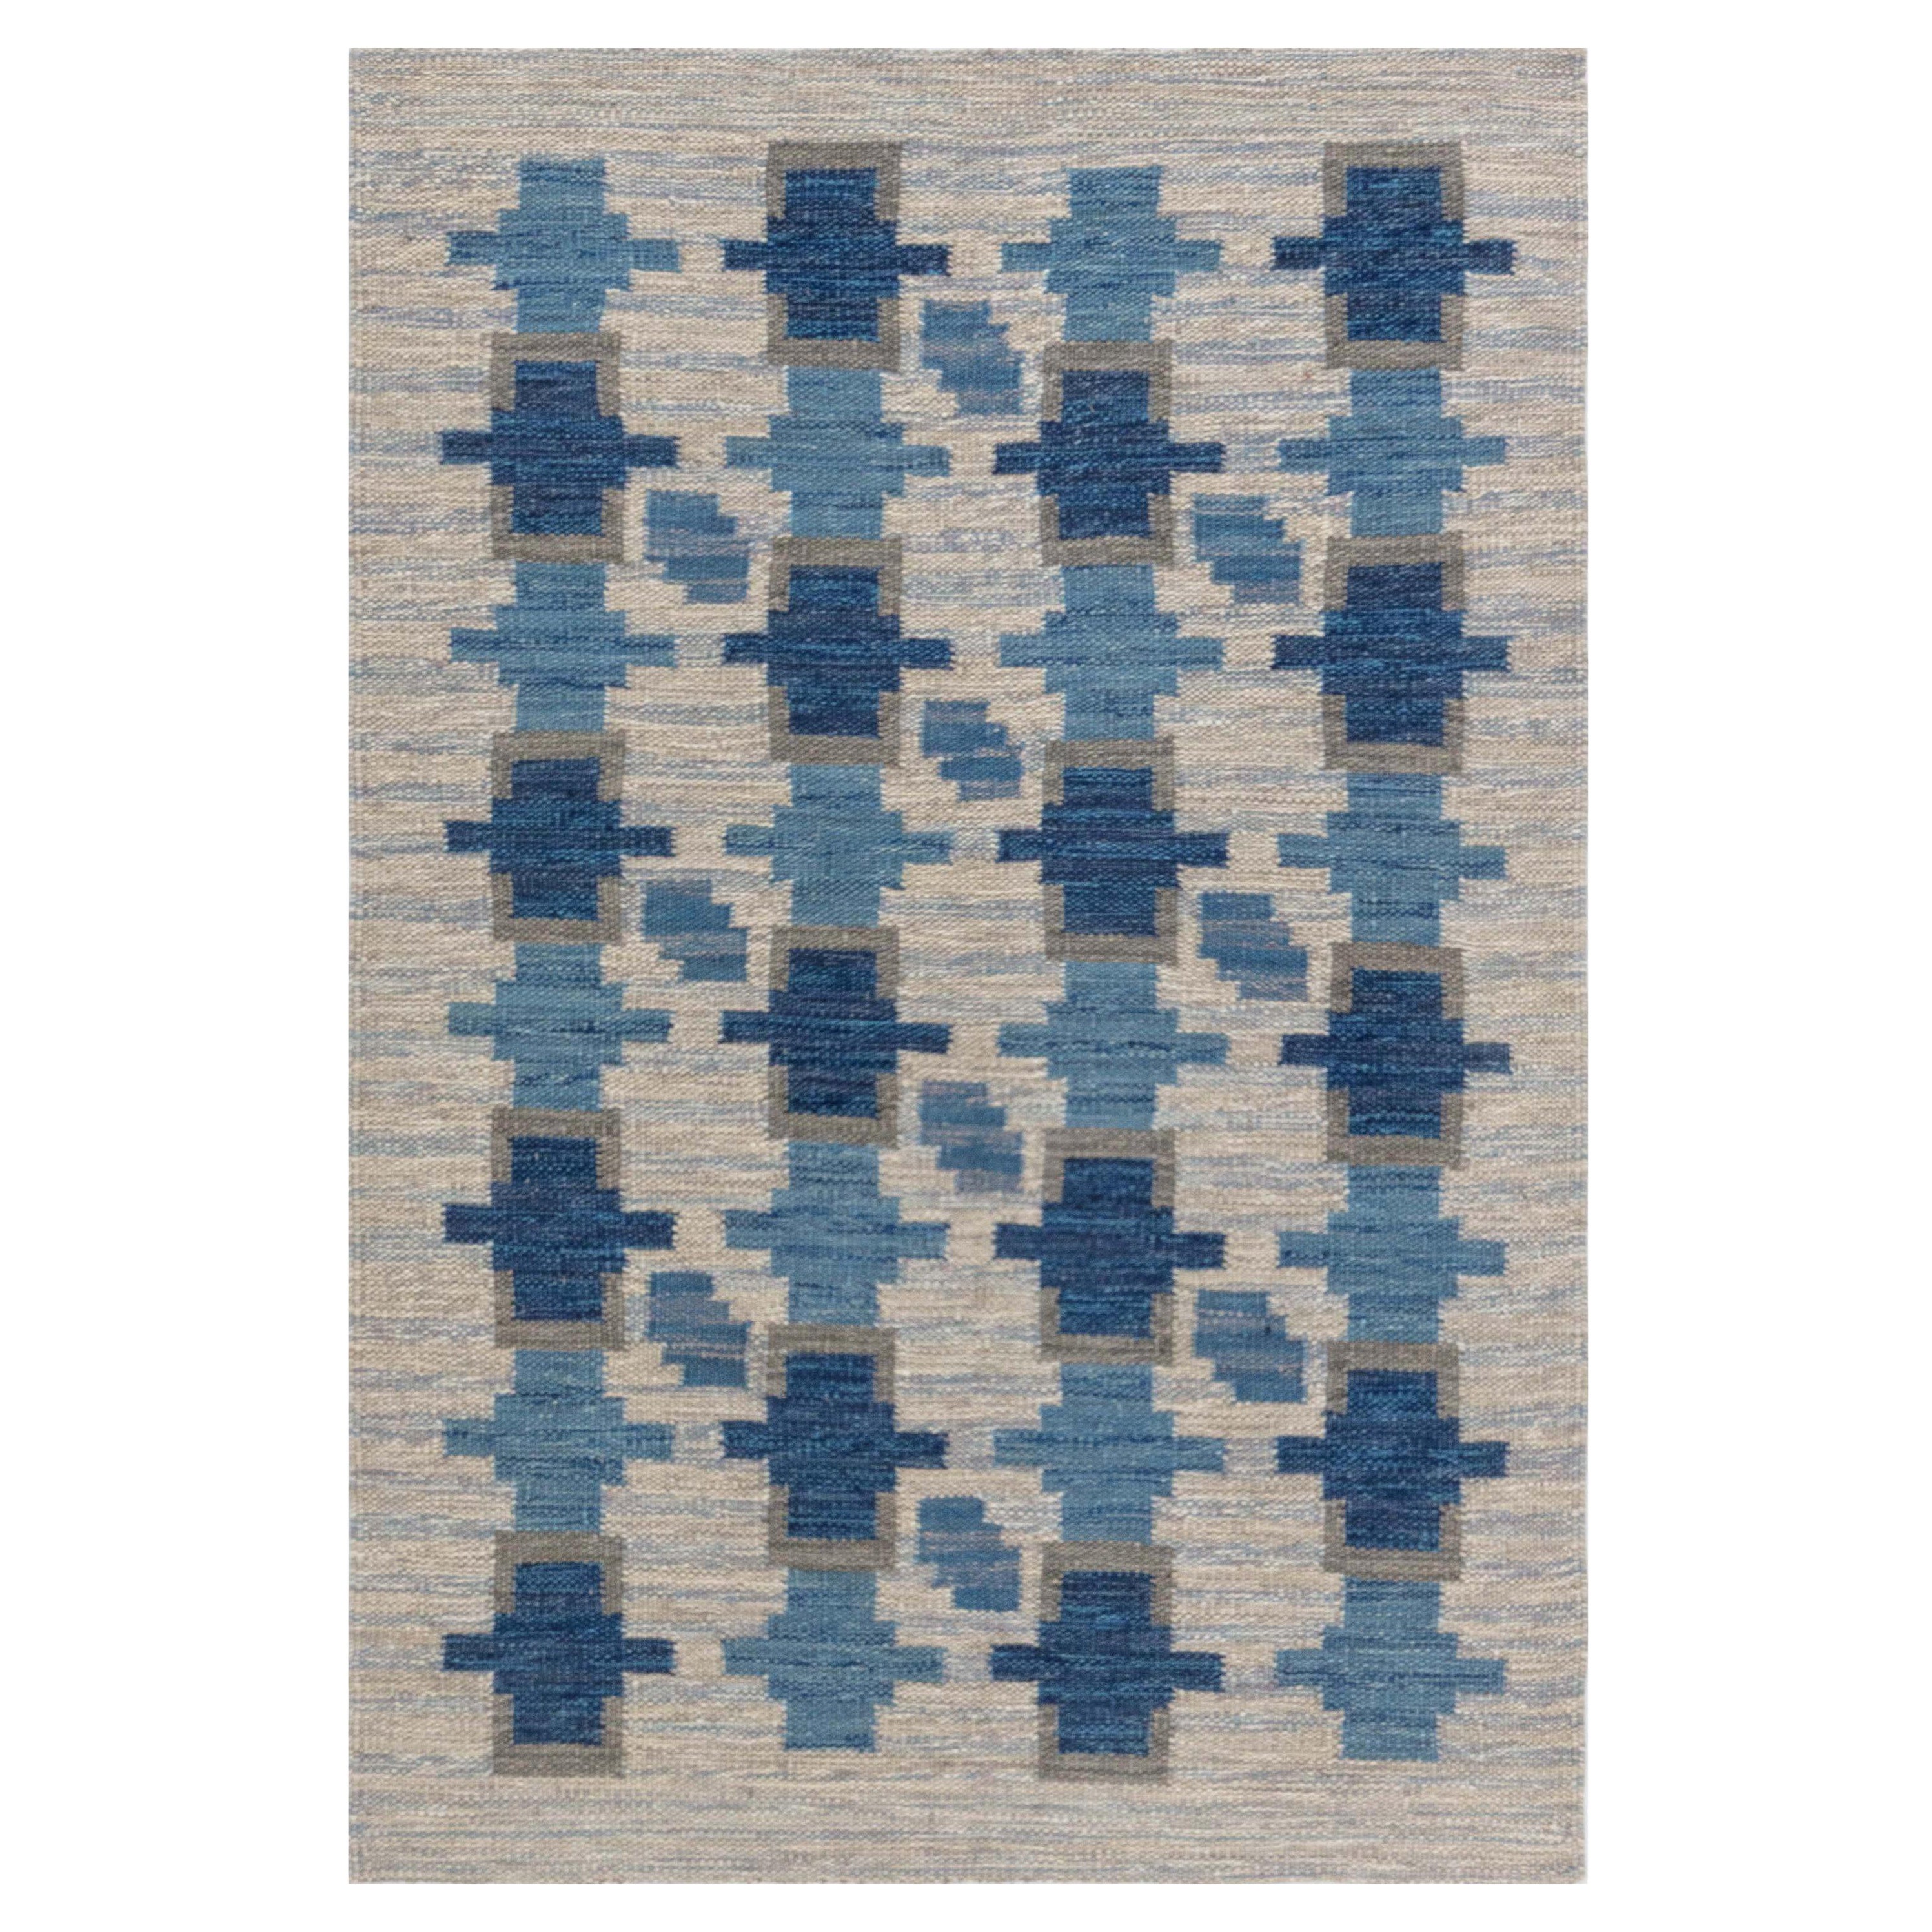 Moderner schwedischer Flachgewebe-Teppich von Doris Leslie Blau